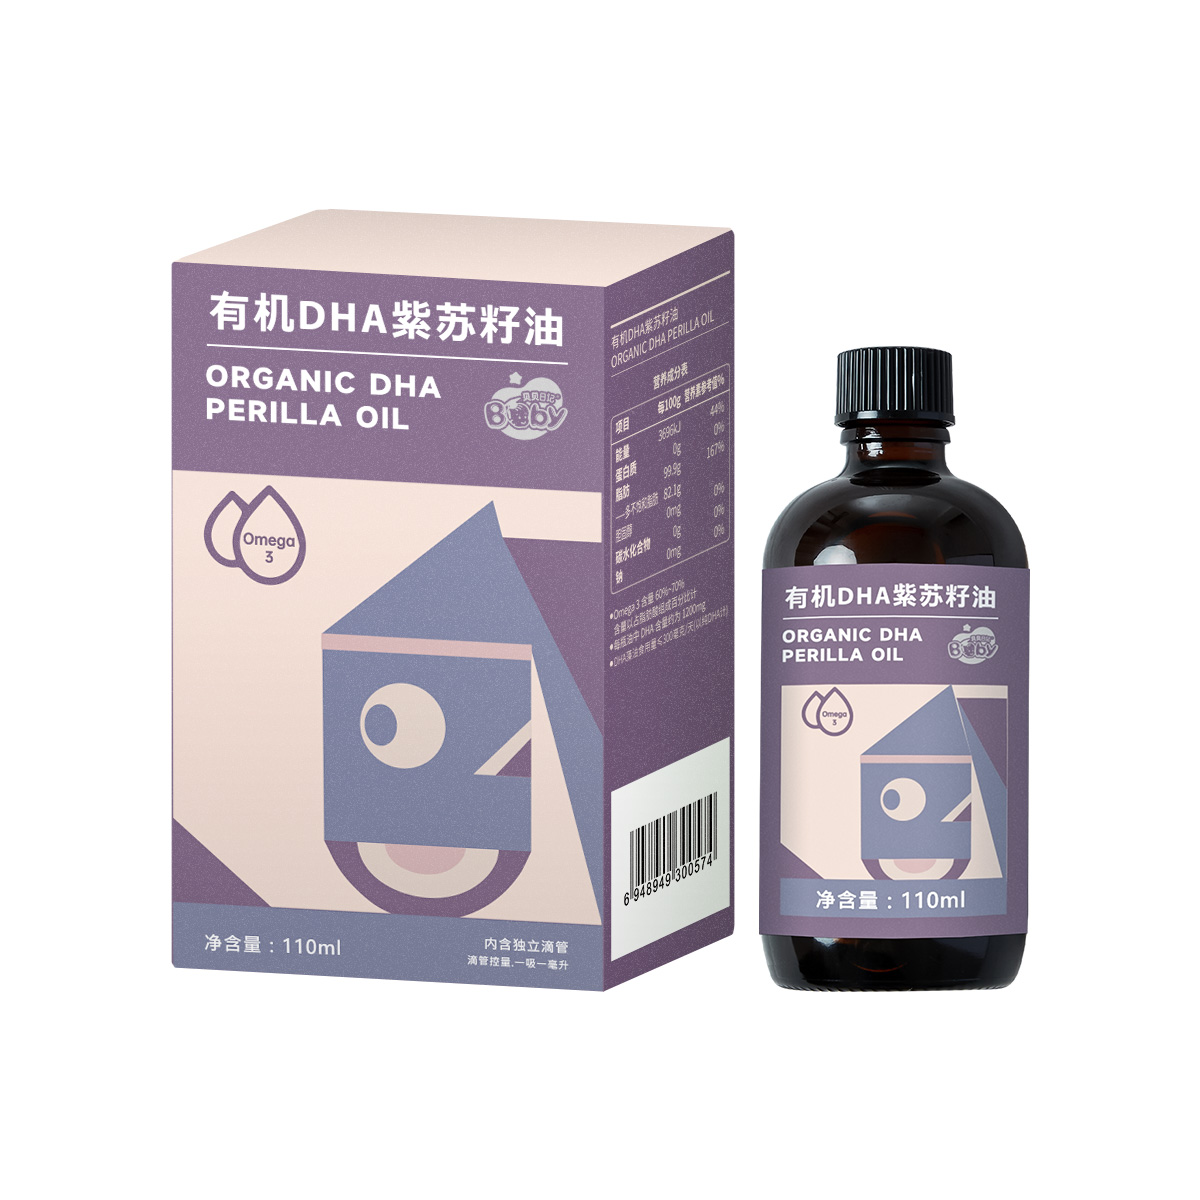 【辅食/母婴用油】 有机DHA紫苏籽油110ml  滴管装